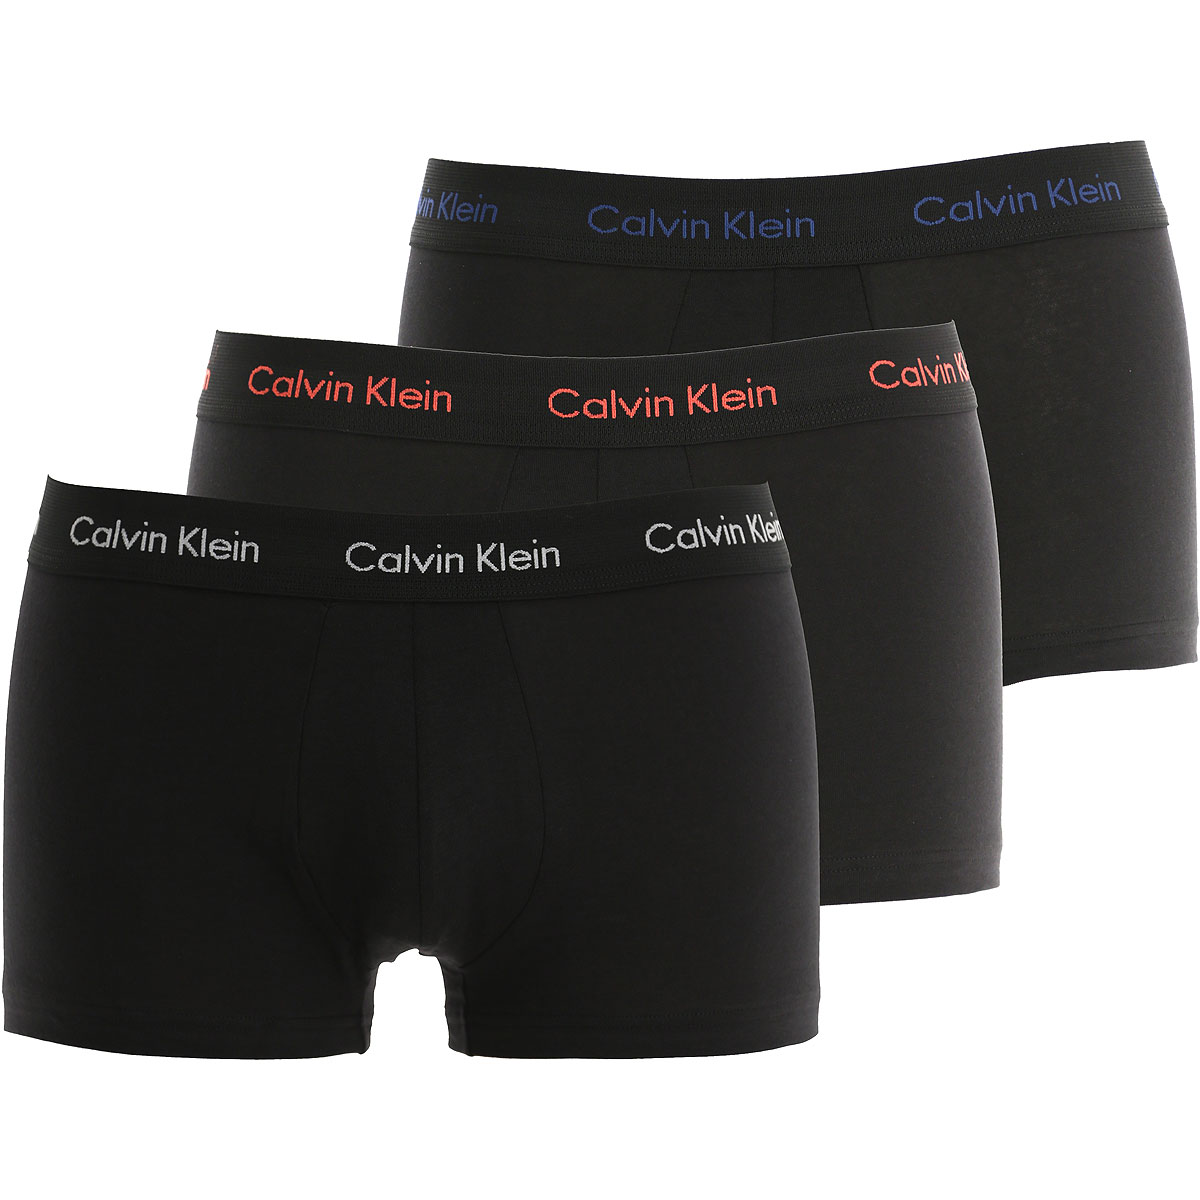 Calvin Klein Boxer Shorts für Herren, Unterhose, Short, Boxer Günstig im Sale, Schwarz, Baumwolle, 2017, S XS